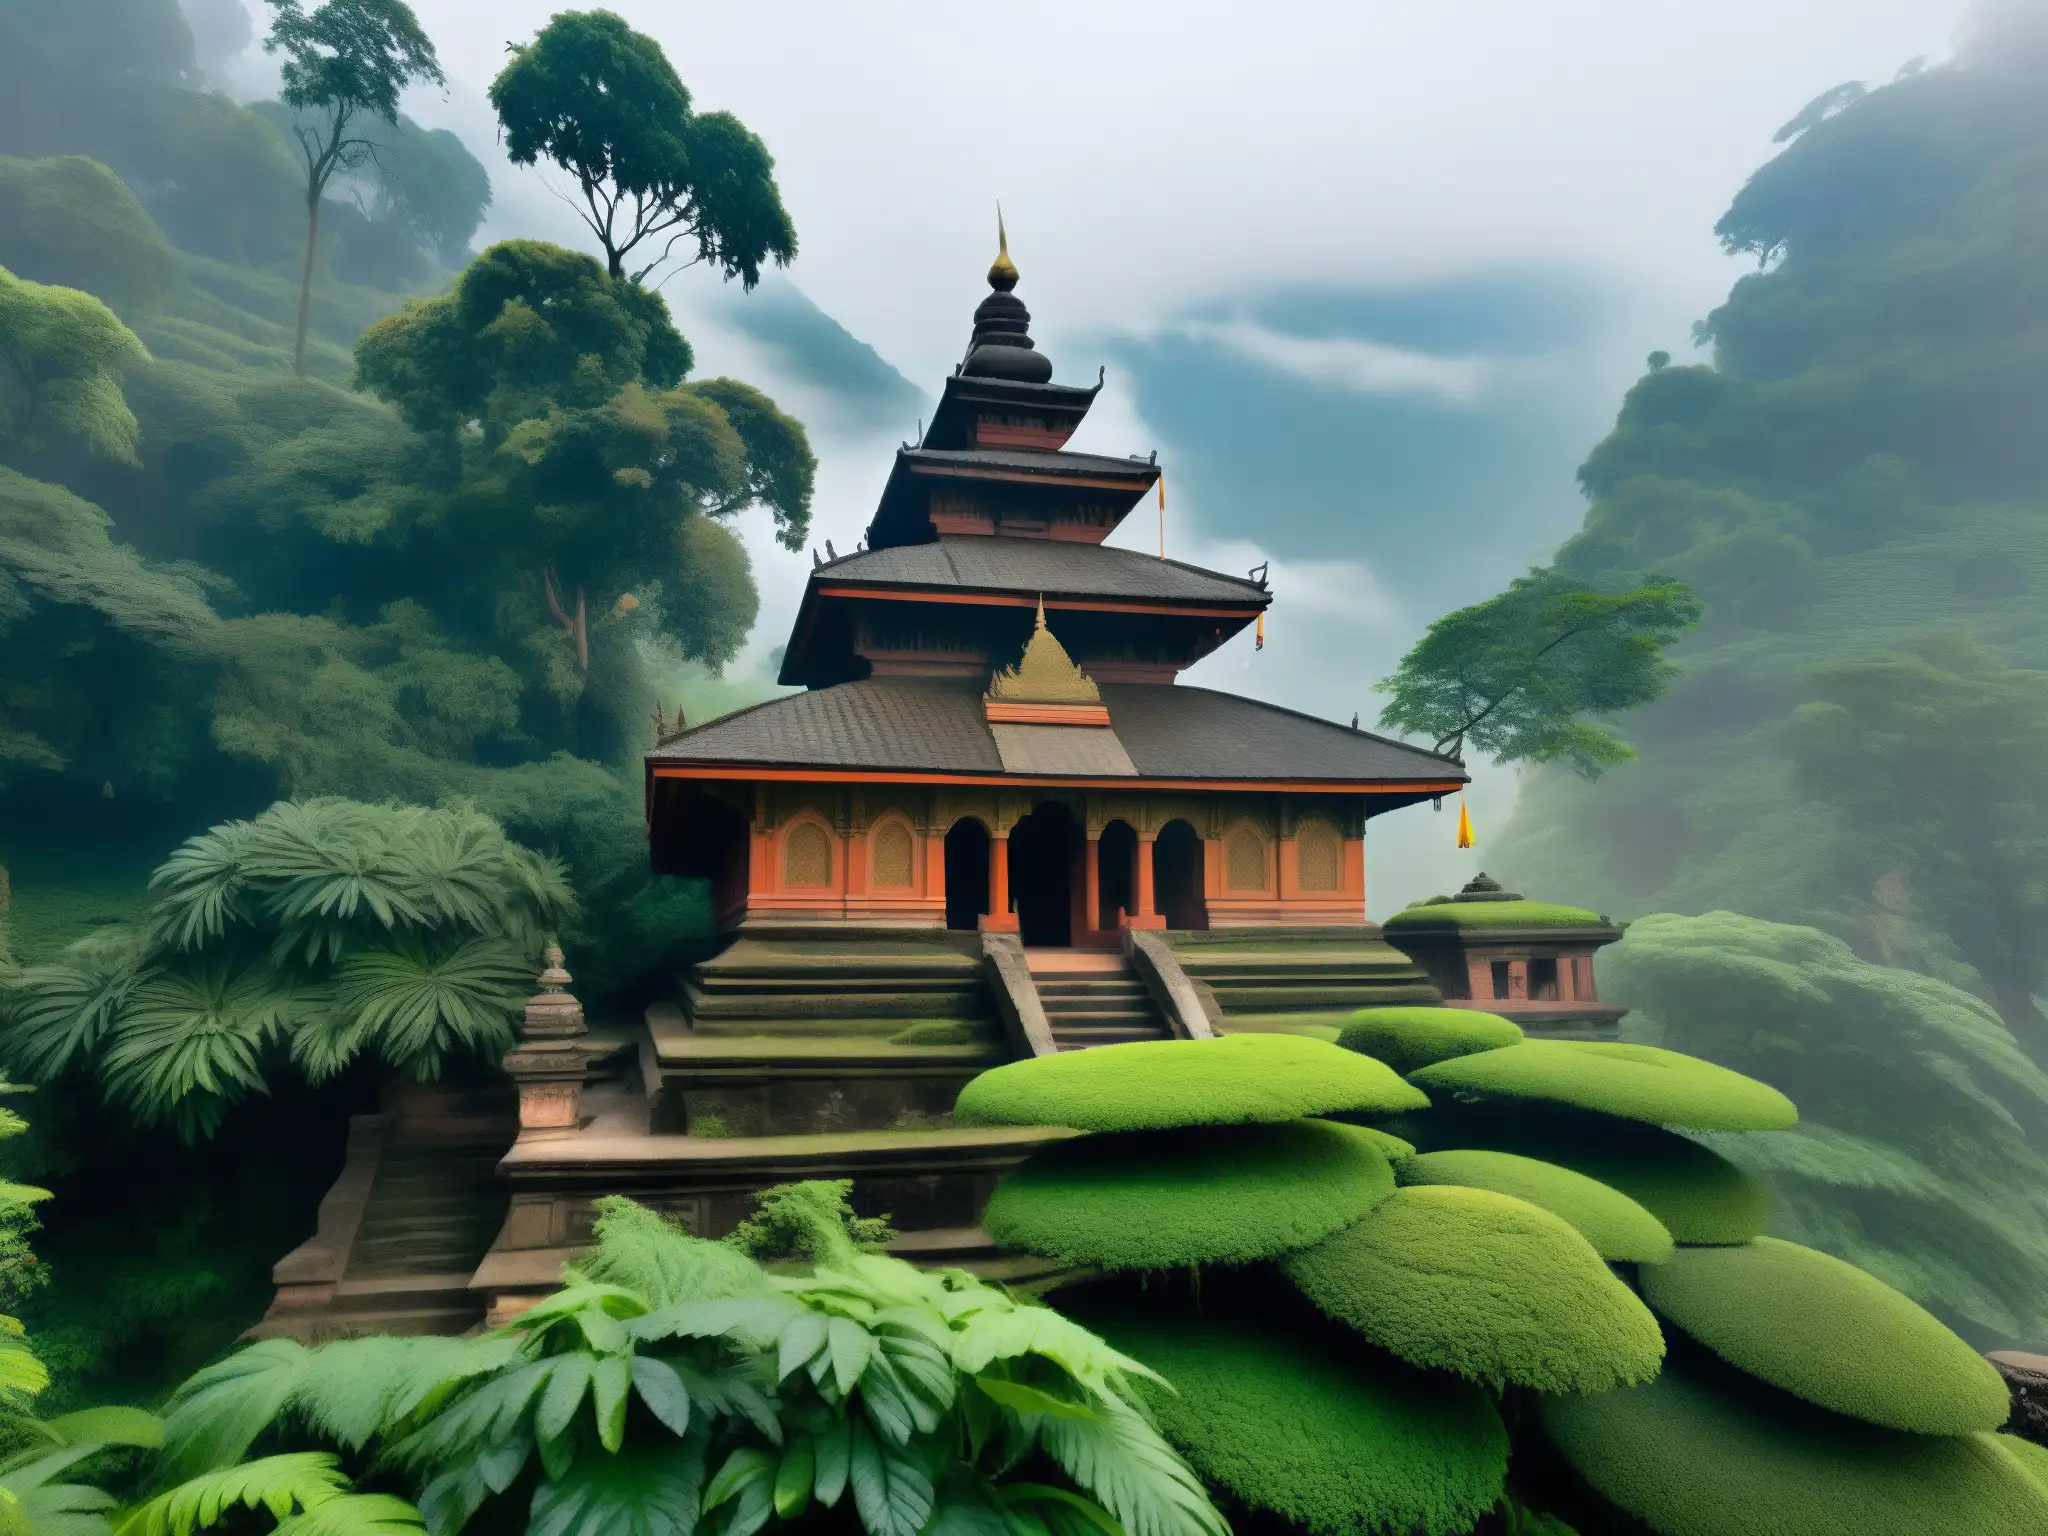 Templo antiguo cubierto de musgo en la niebla de Nepal, rodeado de vegetación exuberante